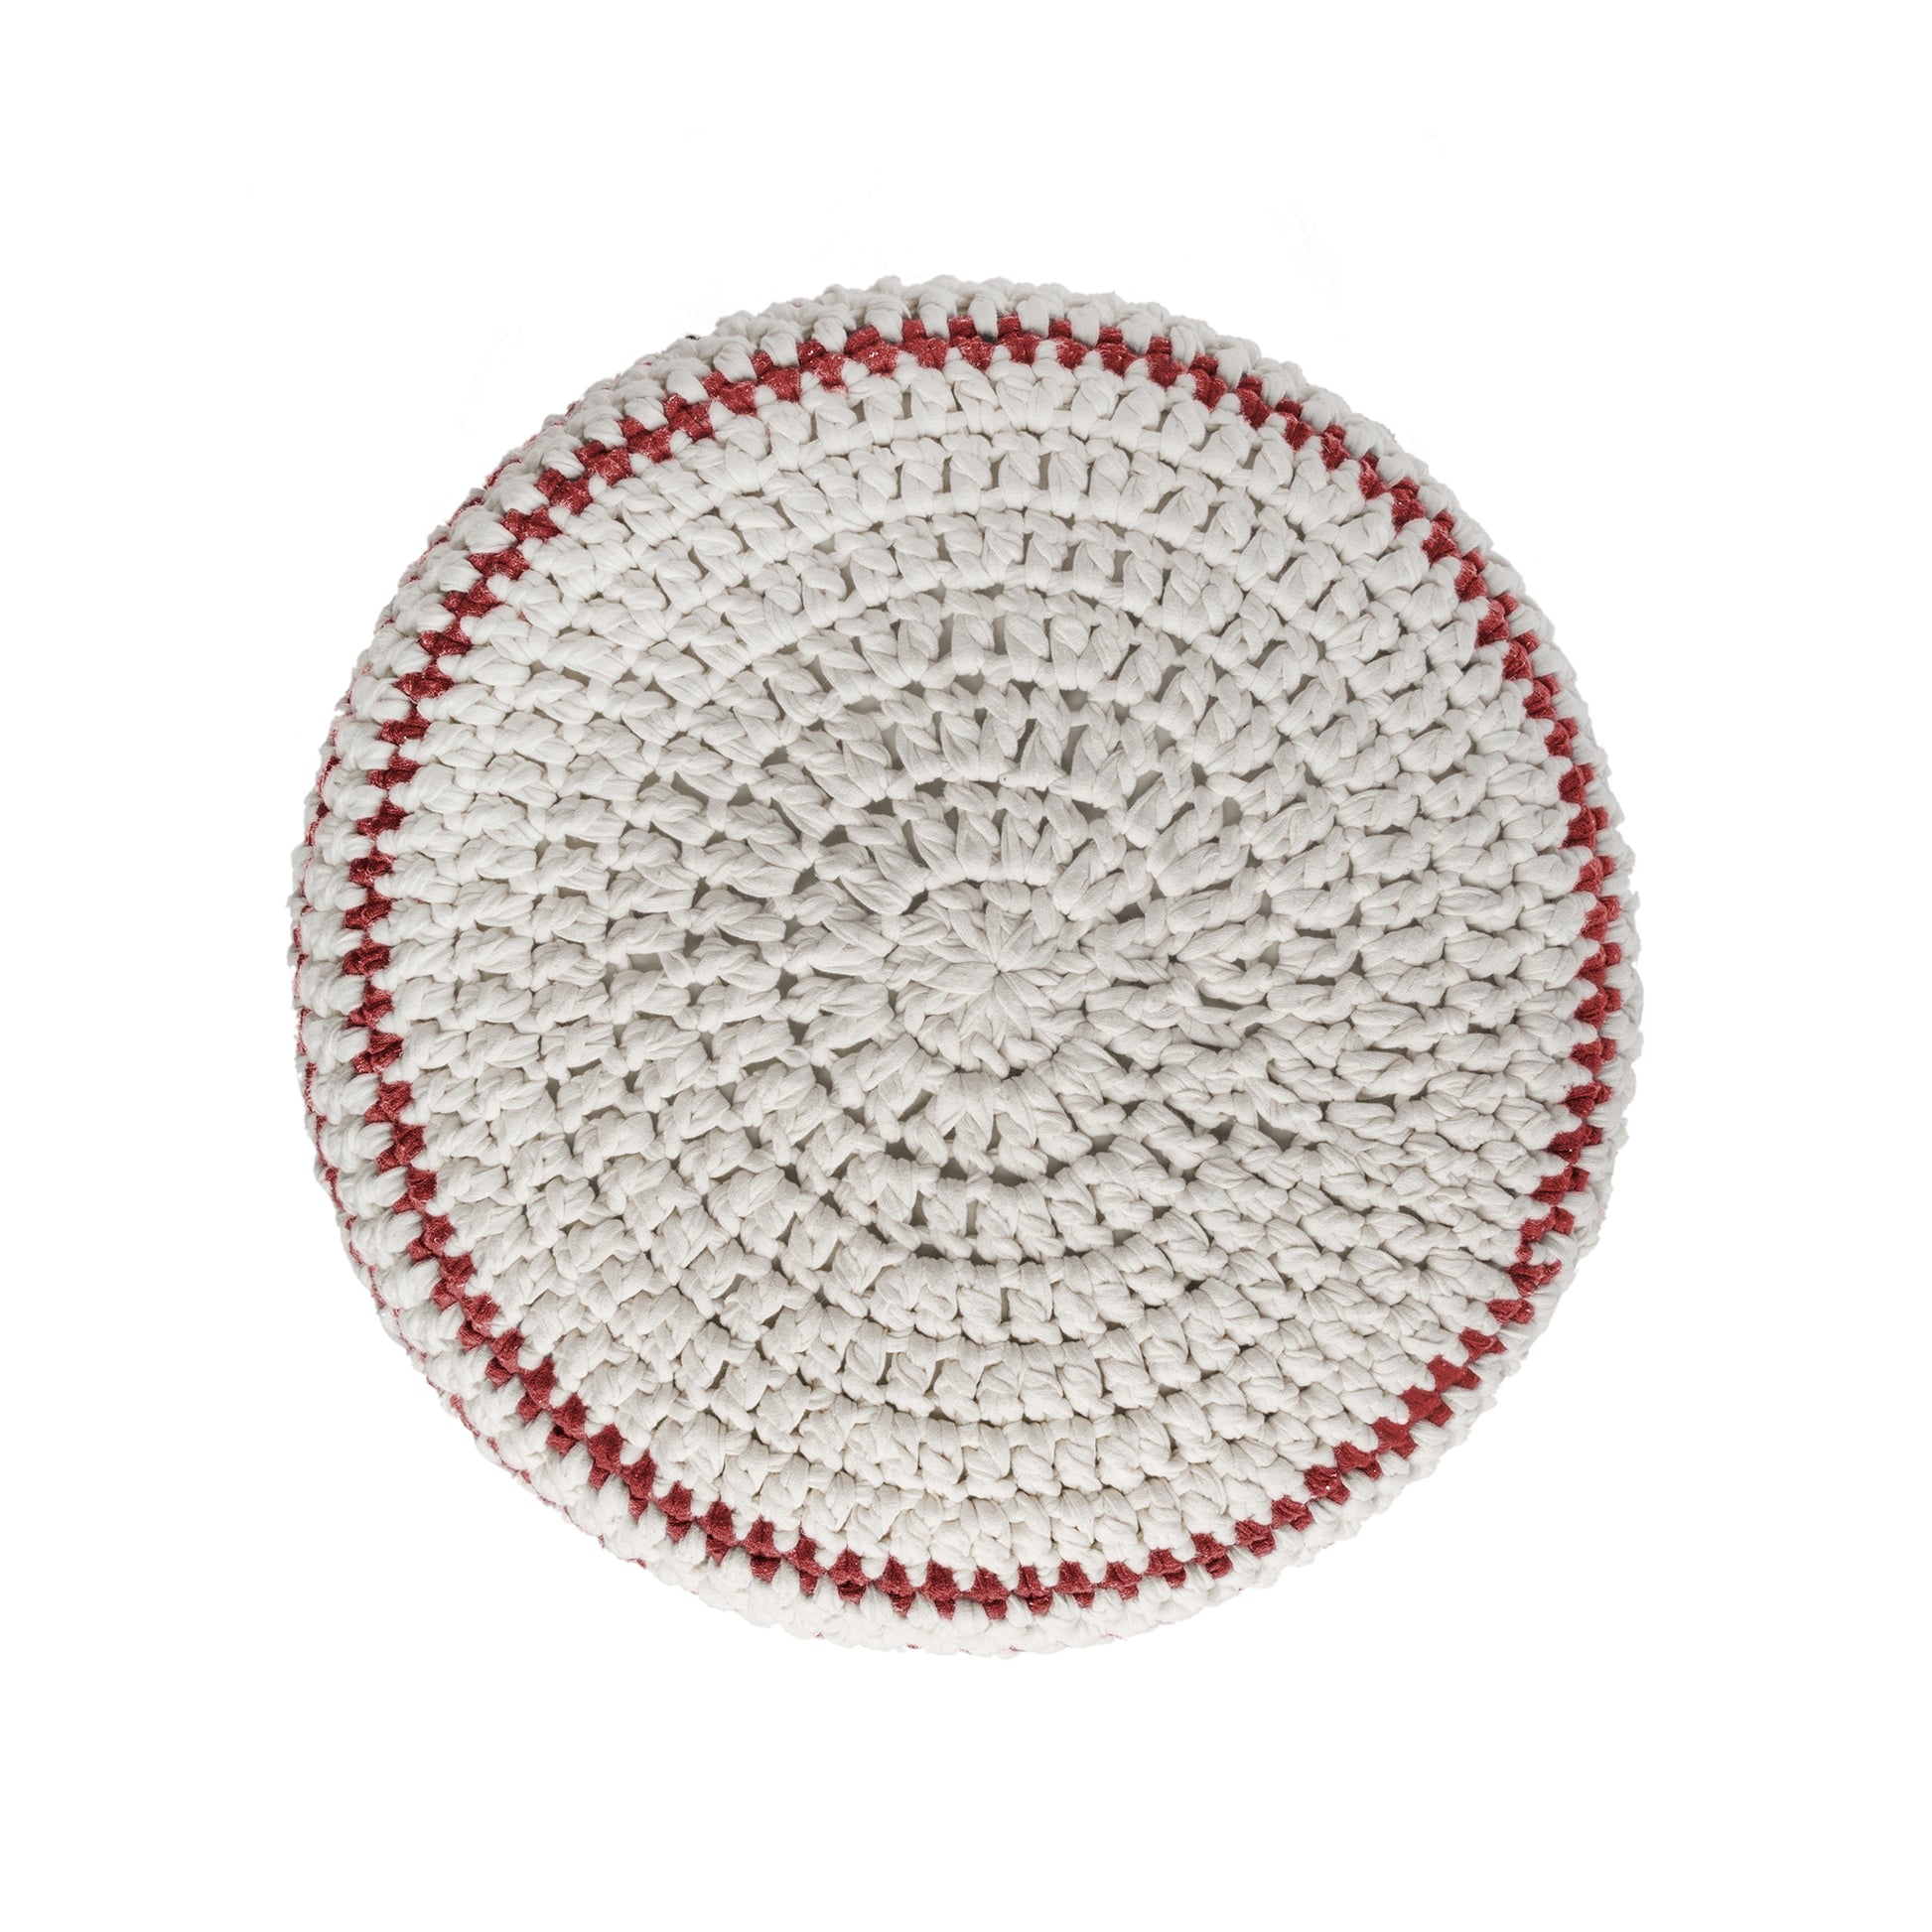 Puff de crochê artesanal listras, Vermelho, com fio 100% algodão.  Fechamento com zíper, possibilitando a remoção da capa para lavagem.  Dimensões: Altura - 30cm; Diâmetro - 60cm. 